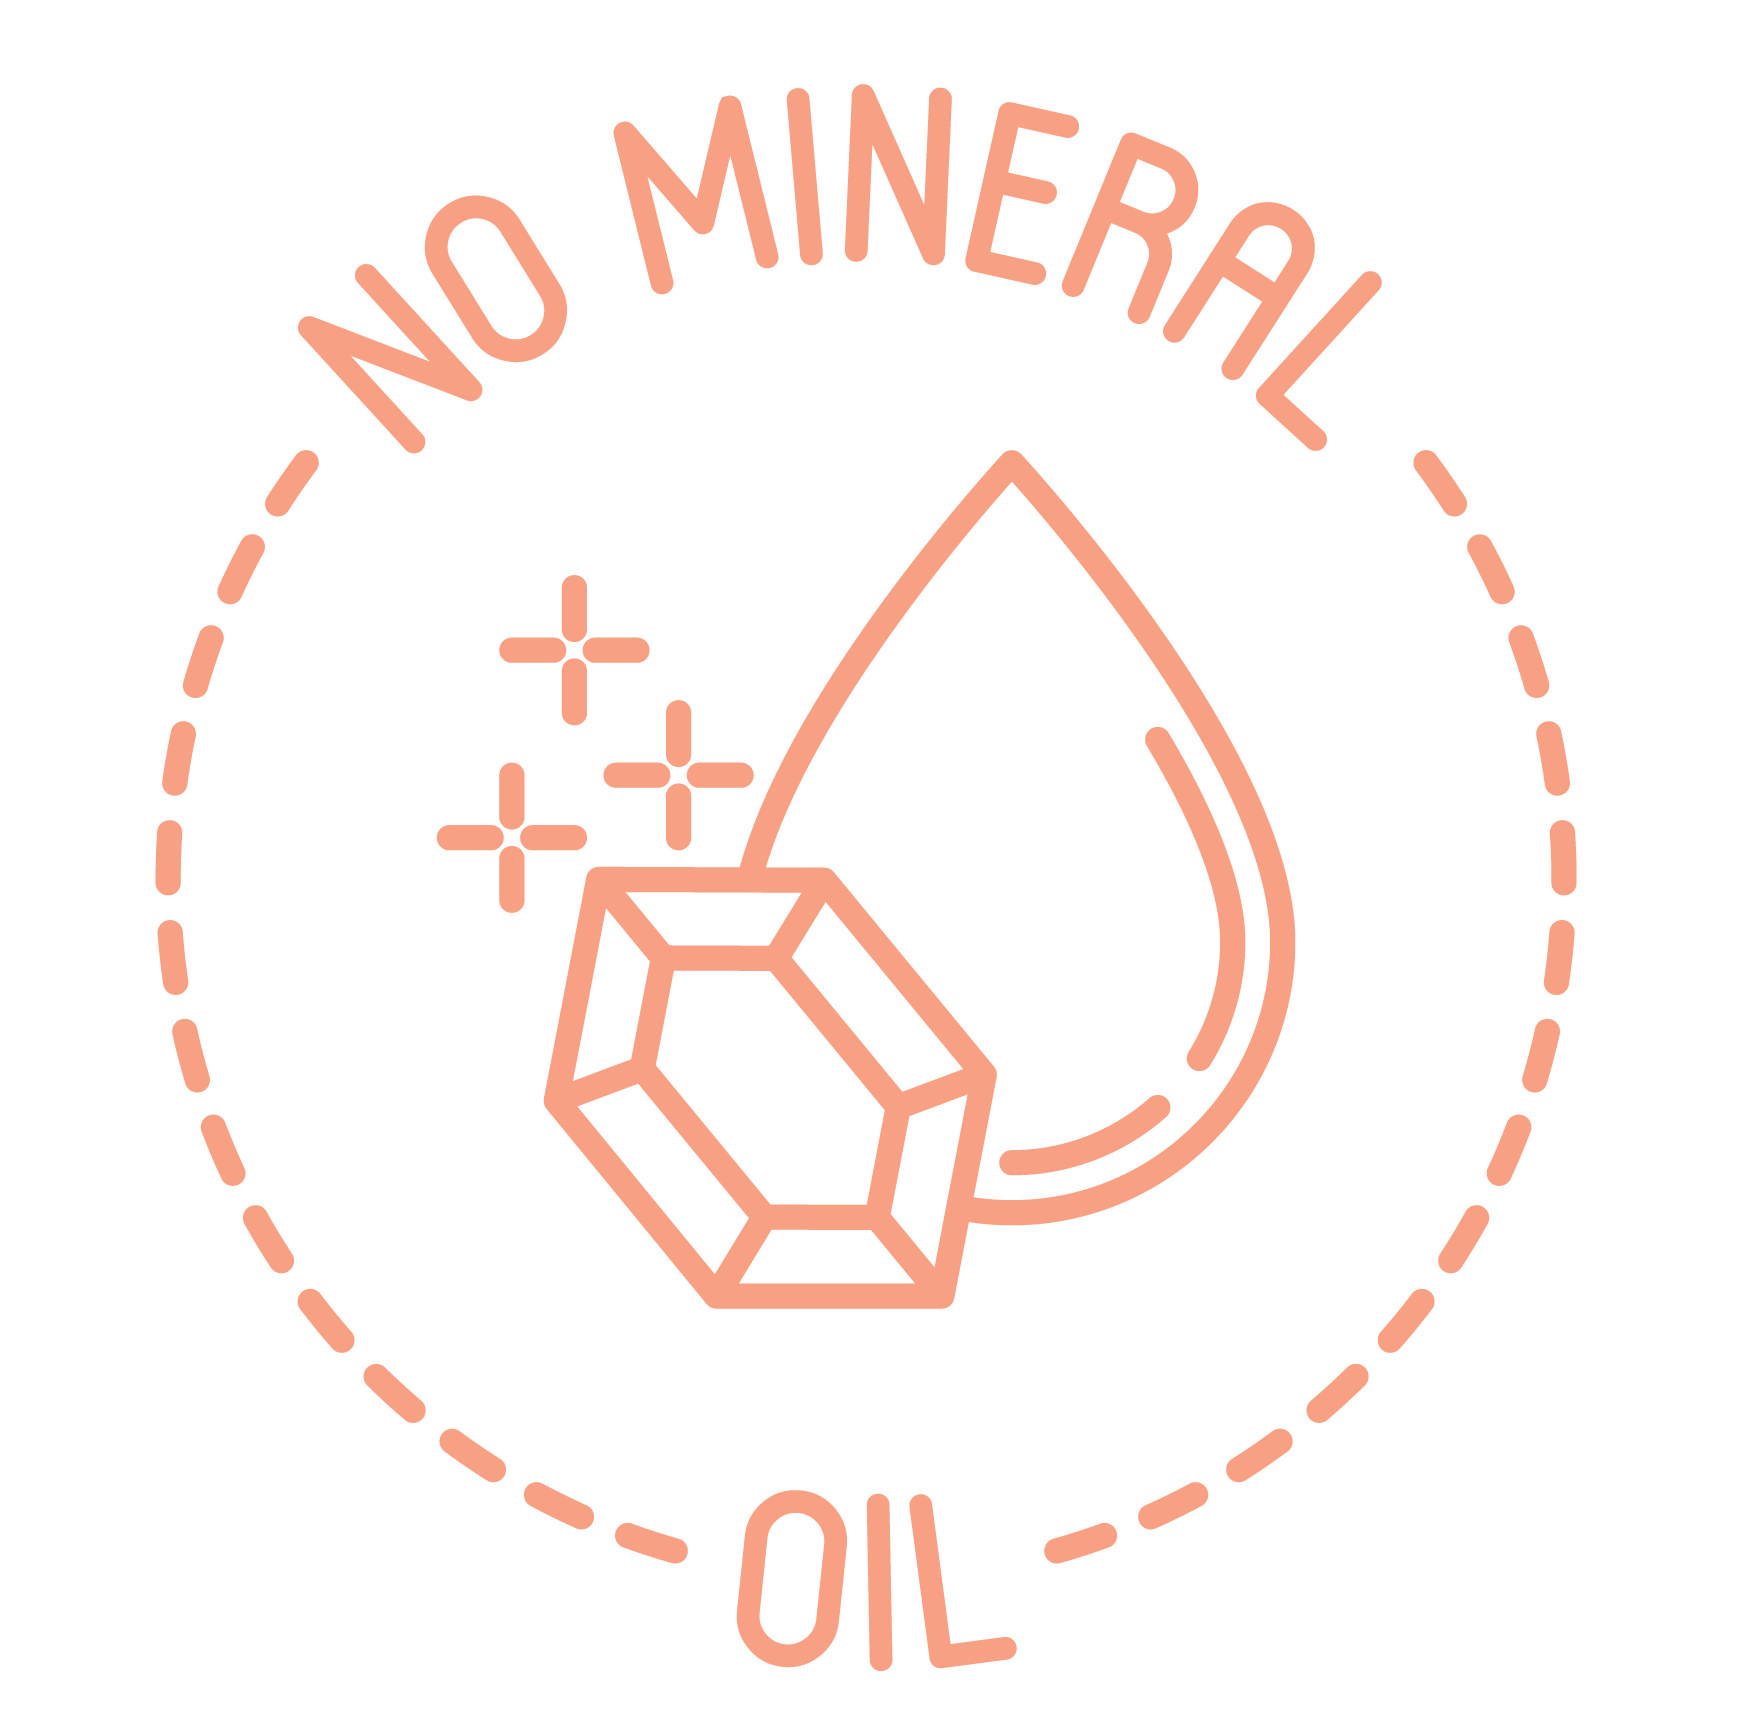 Da Mineralöle die Haut nachhaltig negativ beeinflussen können, verzichten wir bei all unseren Produkten gänzlich auf die Zugabe mineralölhatiger Stoffe und Öle.